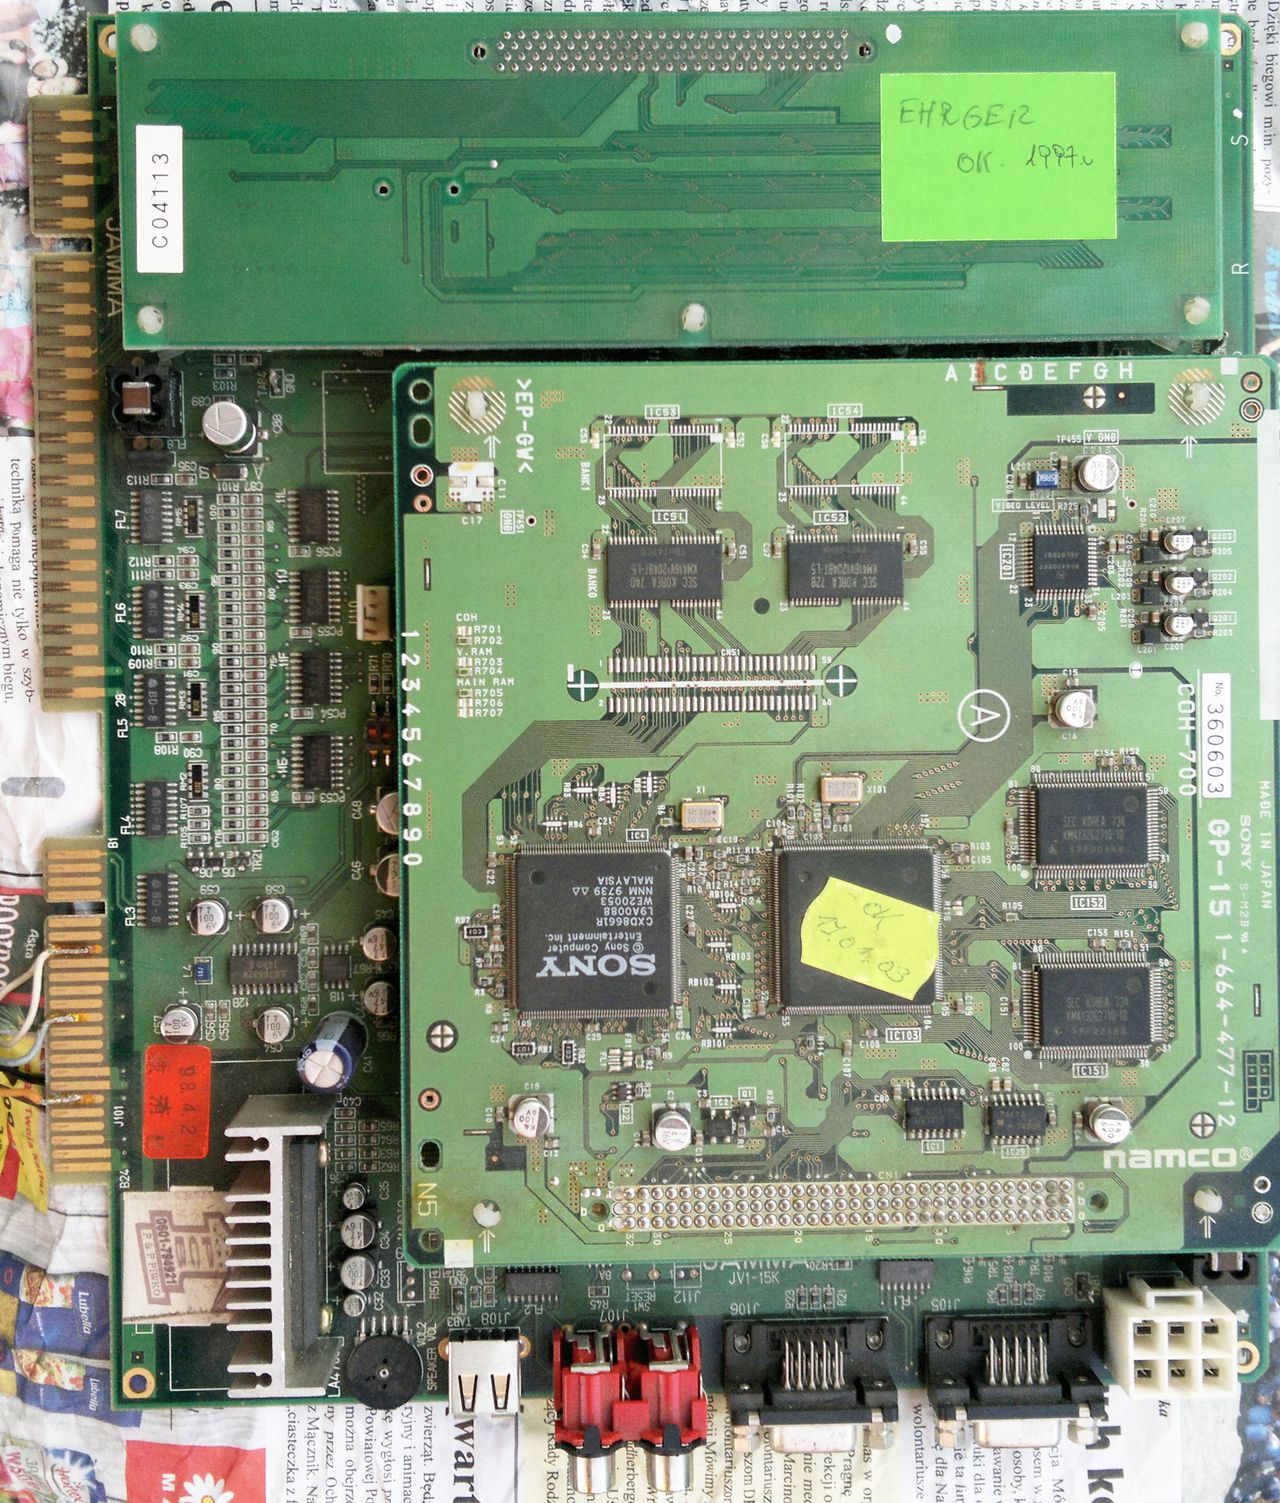 Ehrgeiz - Namco System 12 - wymaga oględzin, brakuje przynajmniej jednego kondensatora